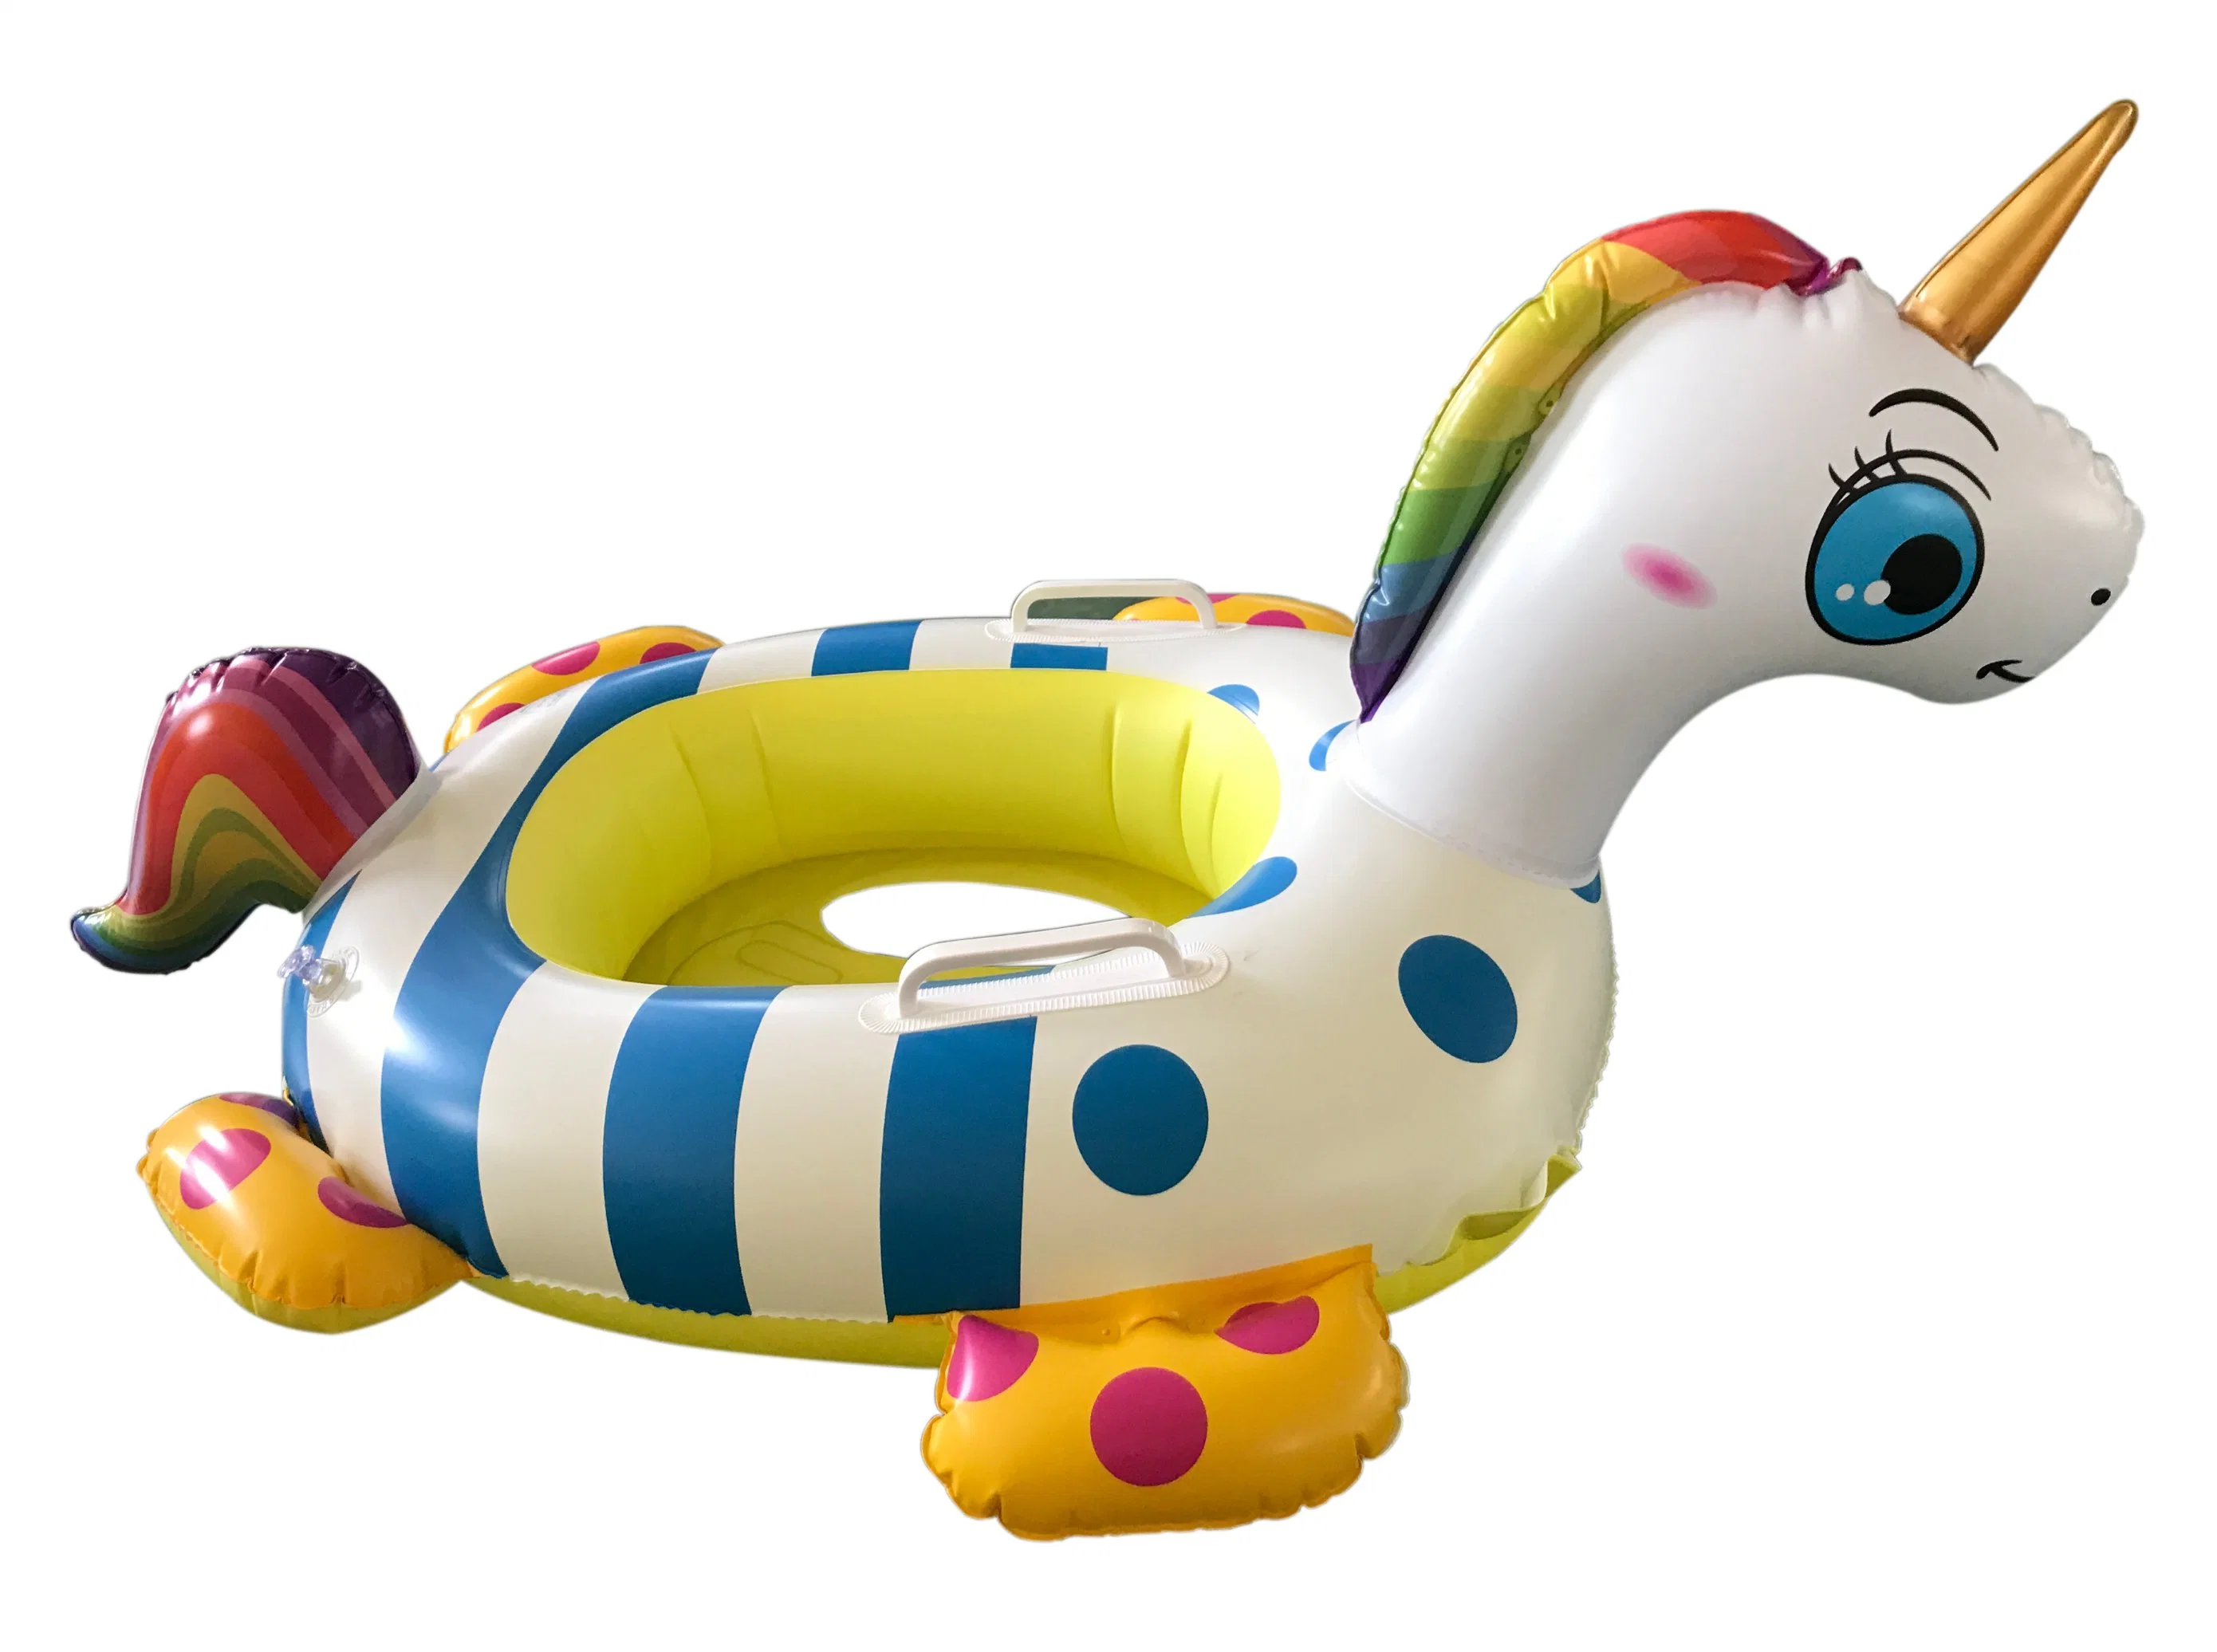 Flotador de piscina inflable para bebés e infantes con forma de unicornio ecológico y amigable con el medio ambiente.